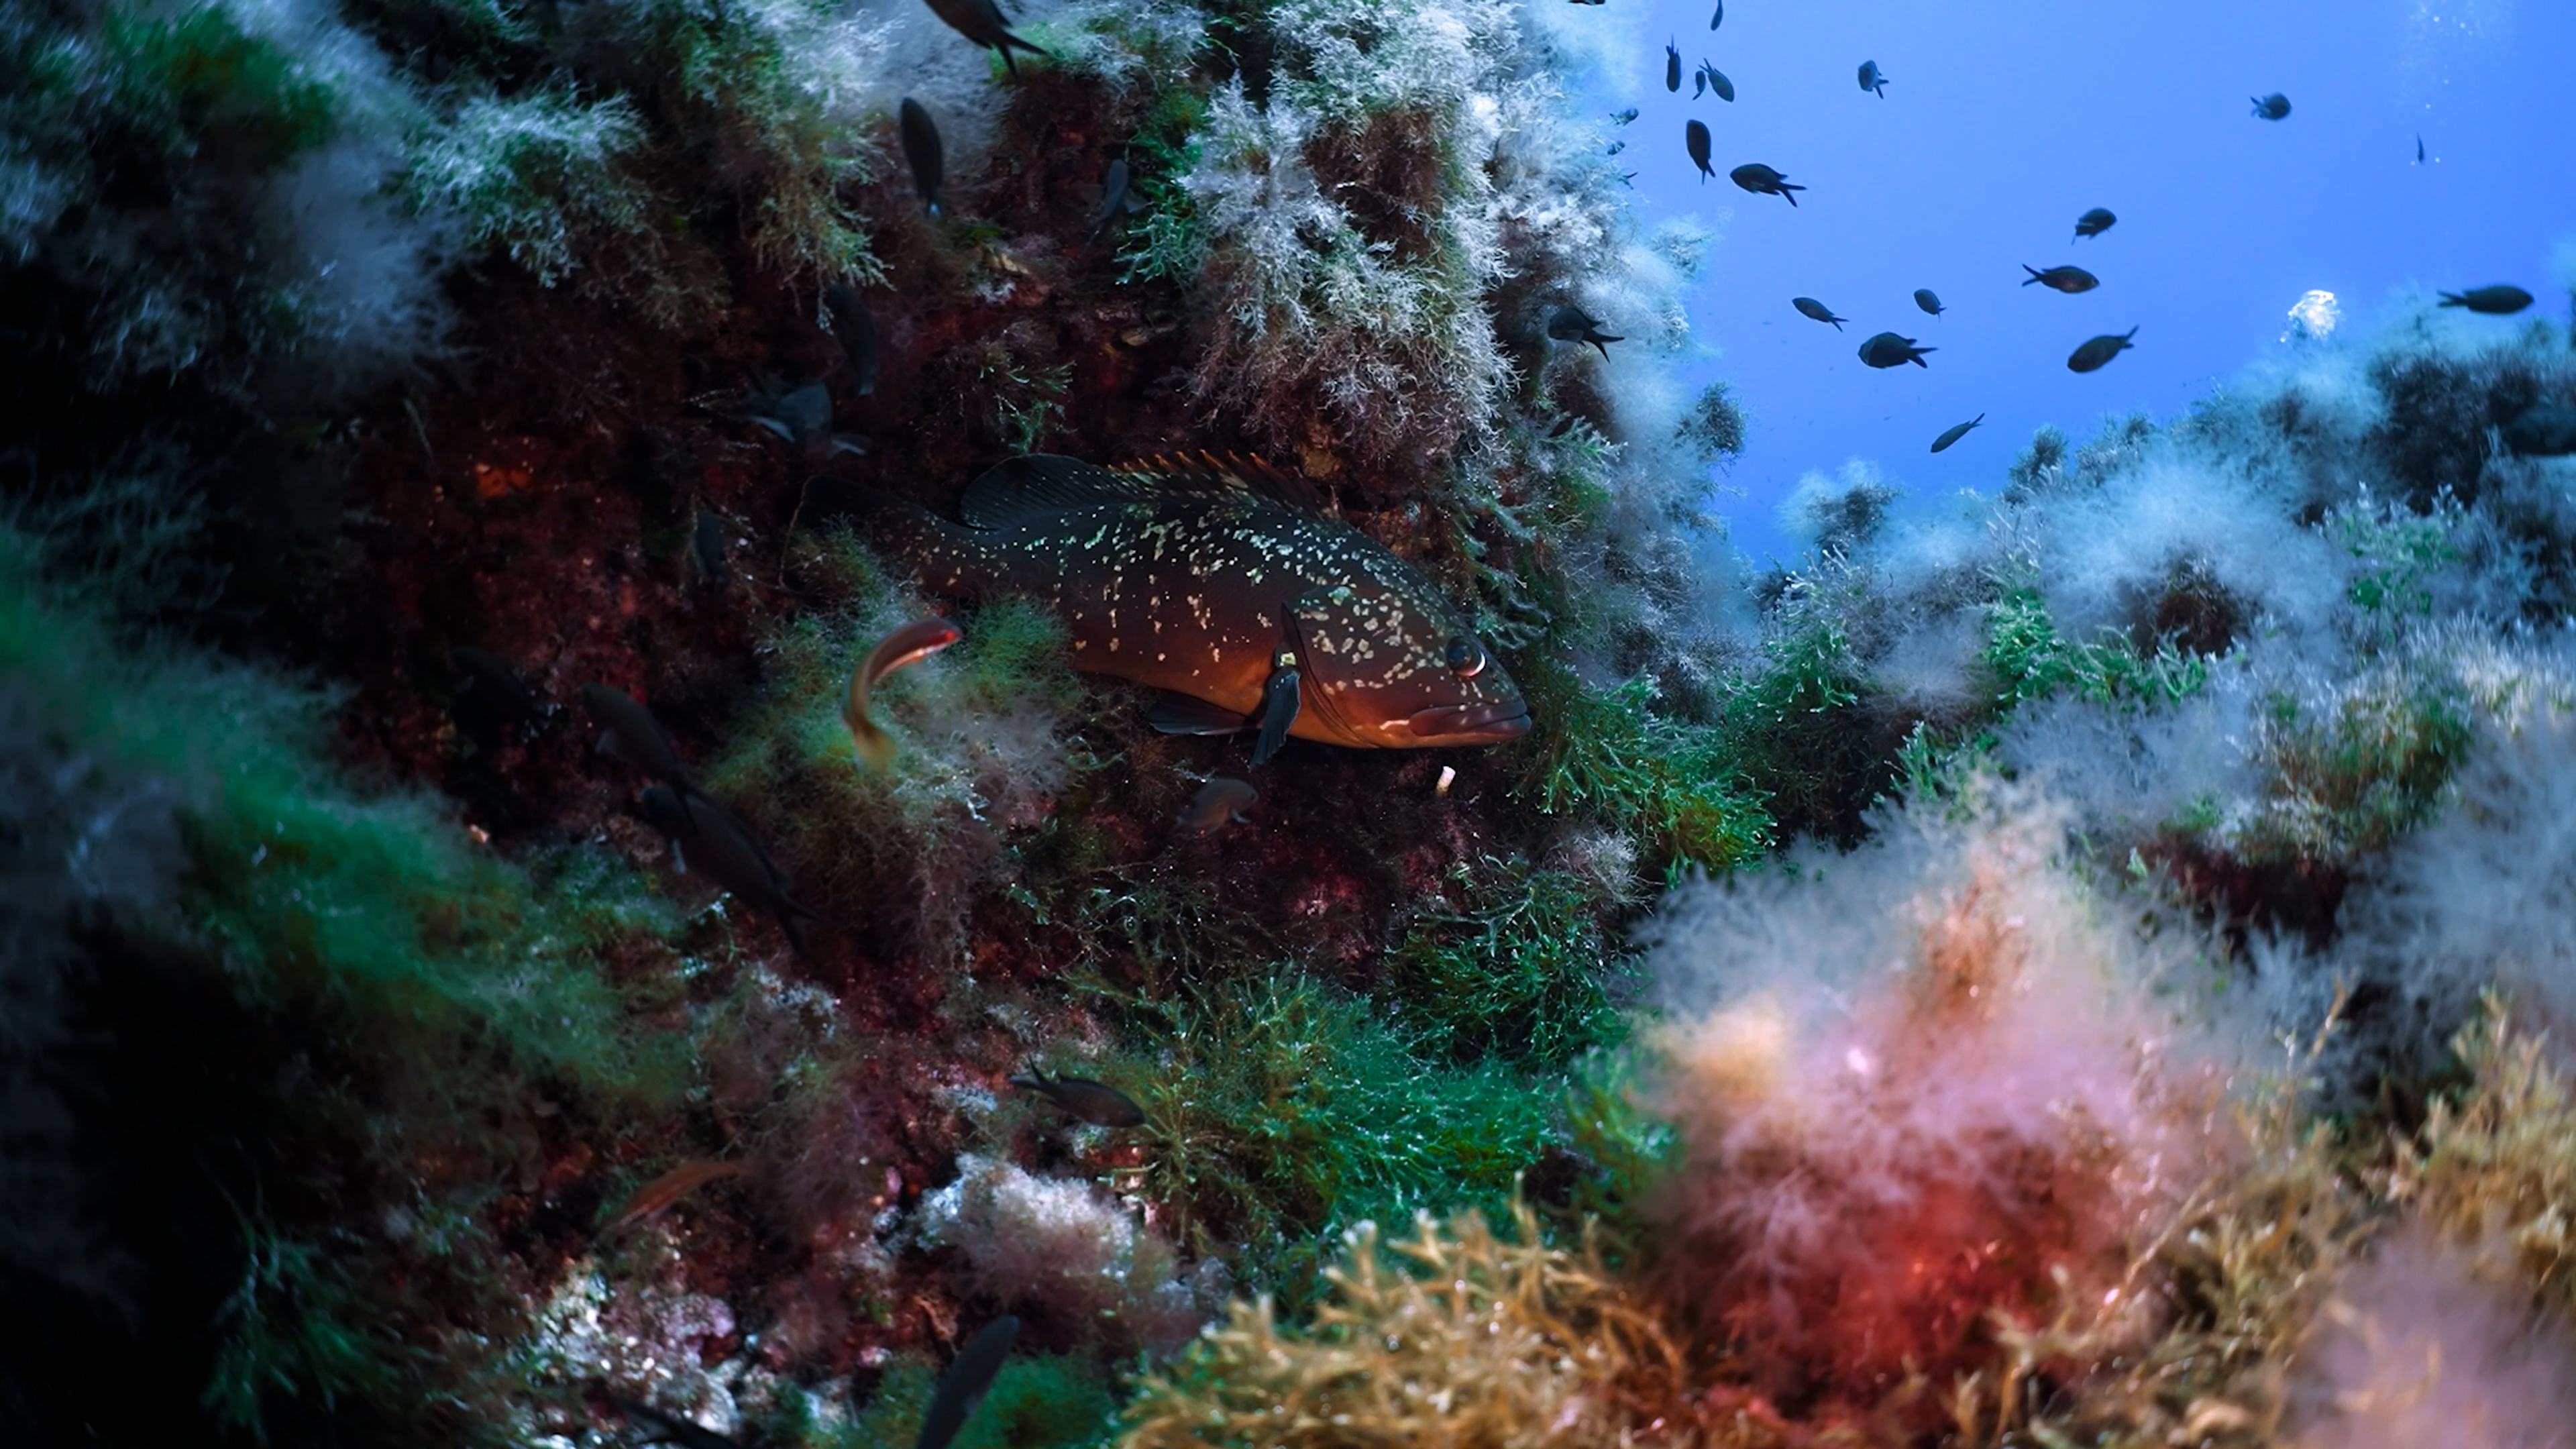 La expedición ha revelado la riqueza de especies y hábitats submarinos poco estudiados. Foto: Fundación Oceanogràfic